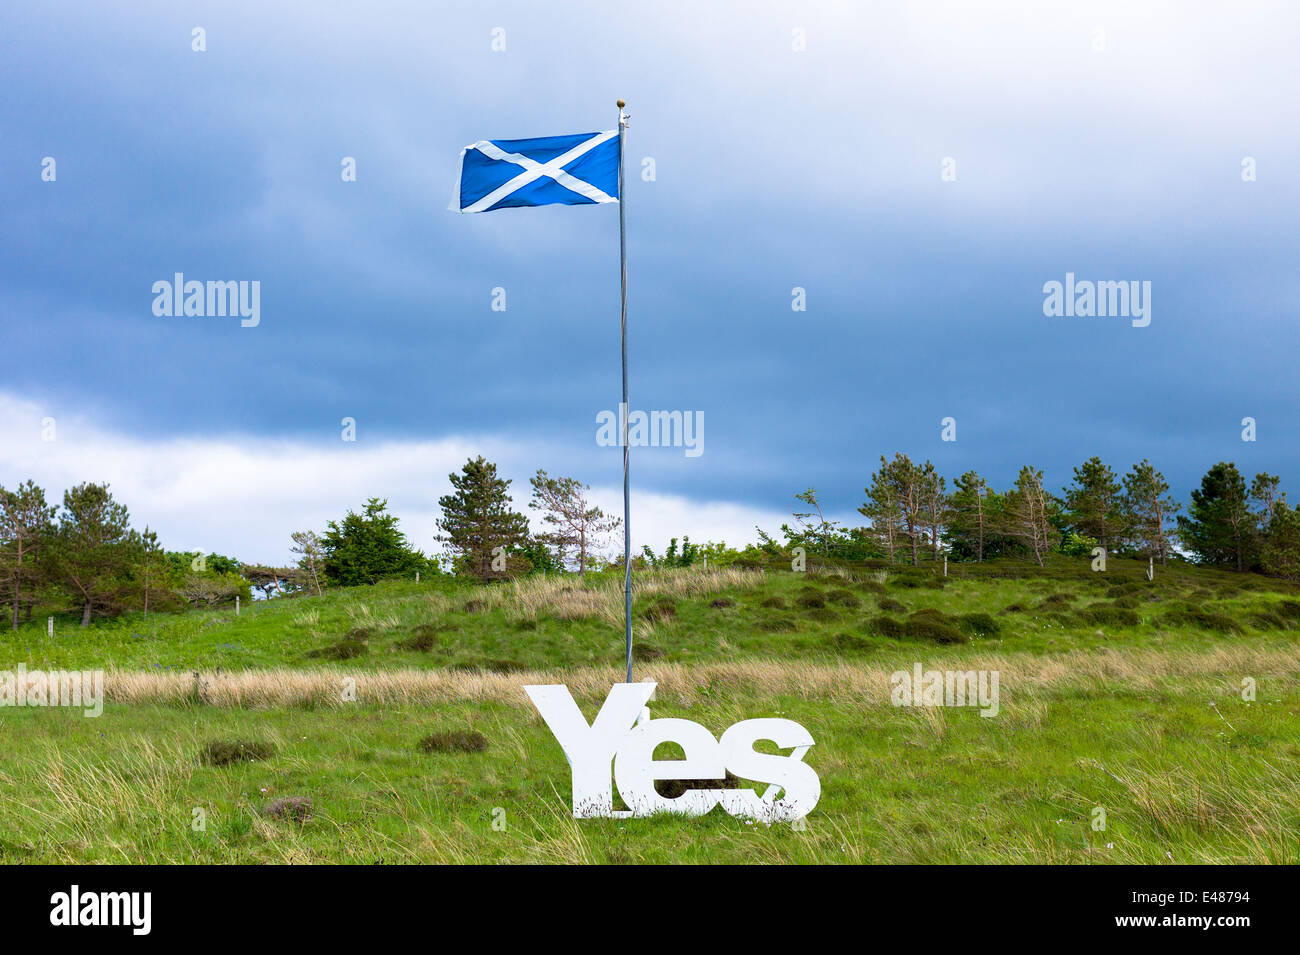 Saltire Nationalflagge von St Andrew, schottische Unabhängigkeit Referendum Debatte Kampagne für Stimmen ja für unterschiedliche Schottland nation Stockfoto